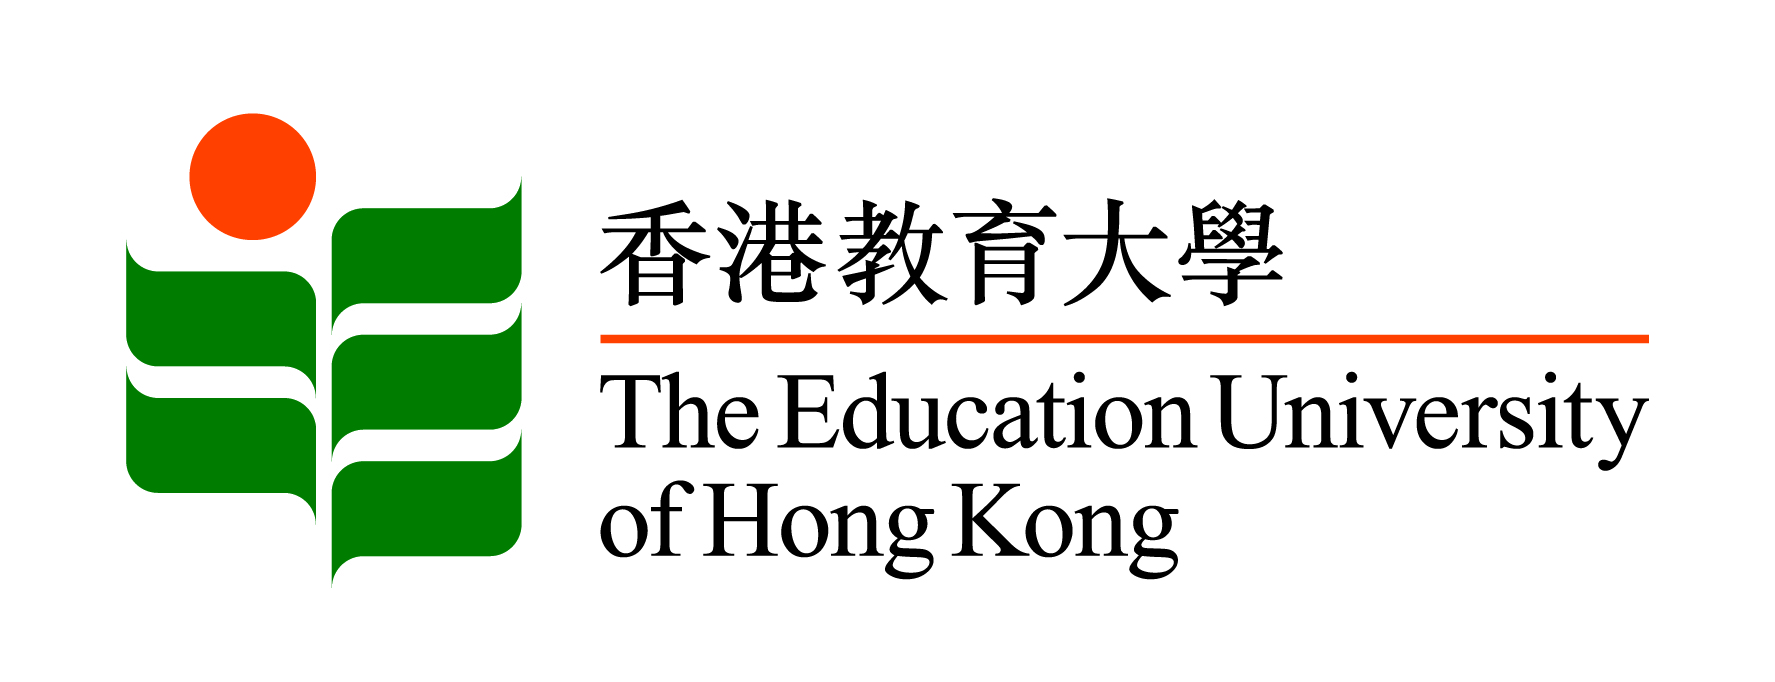 Ed Uni Hong Kong_Logo